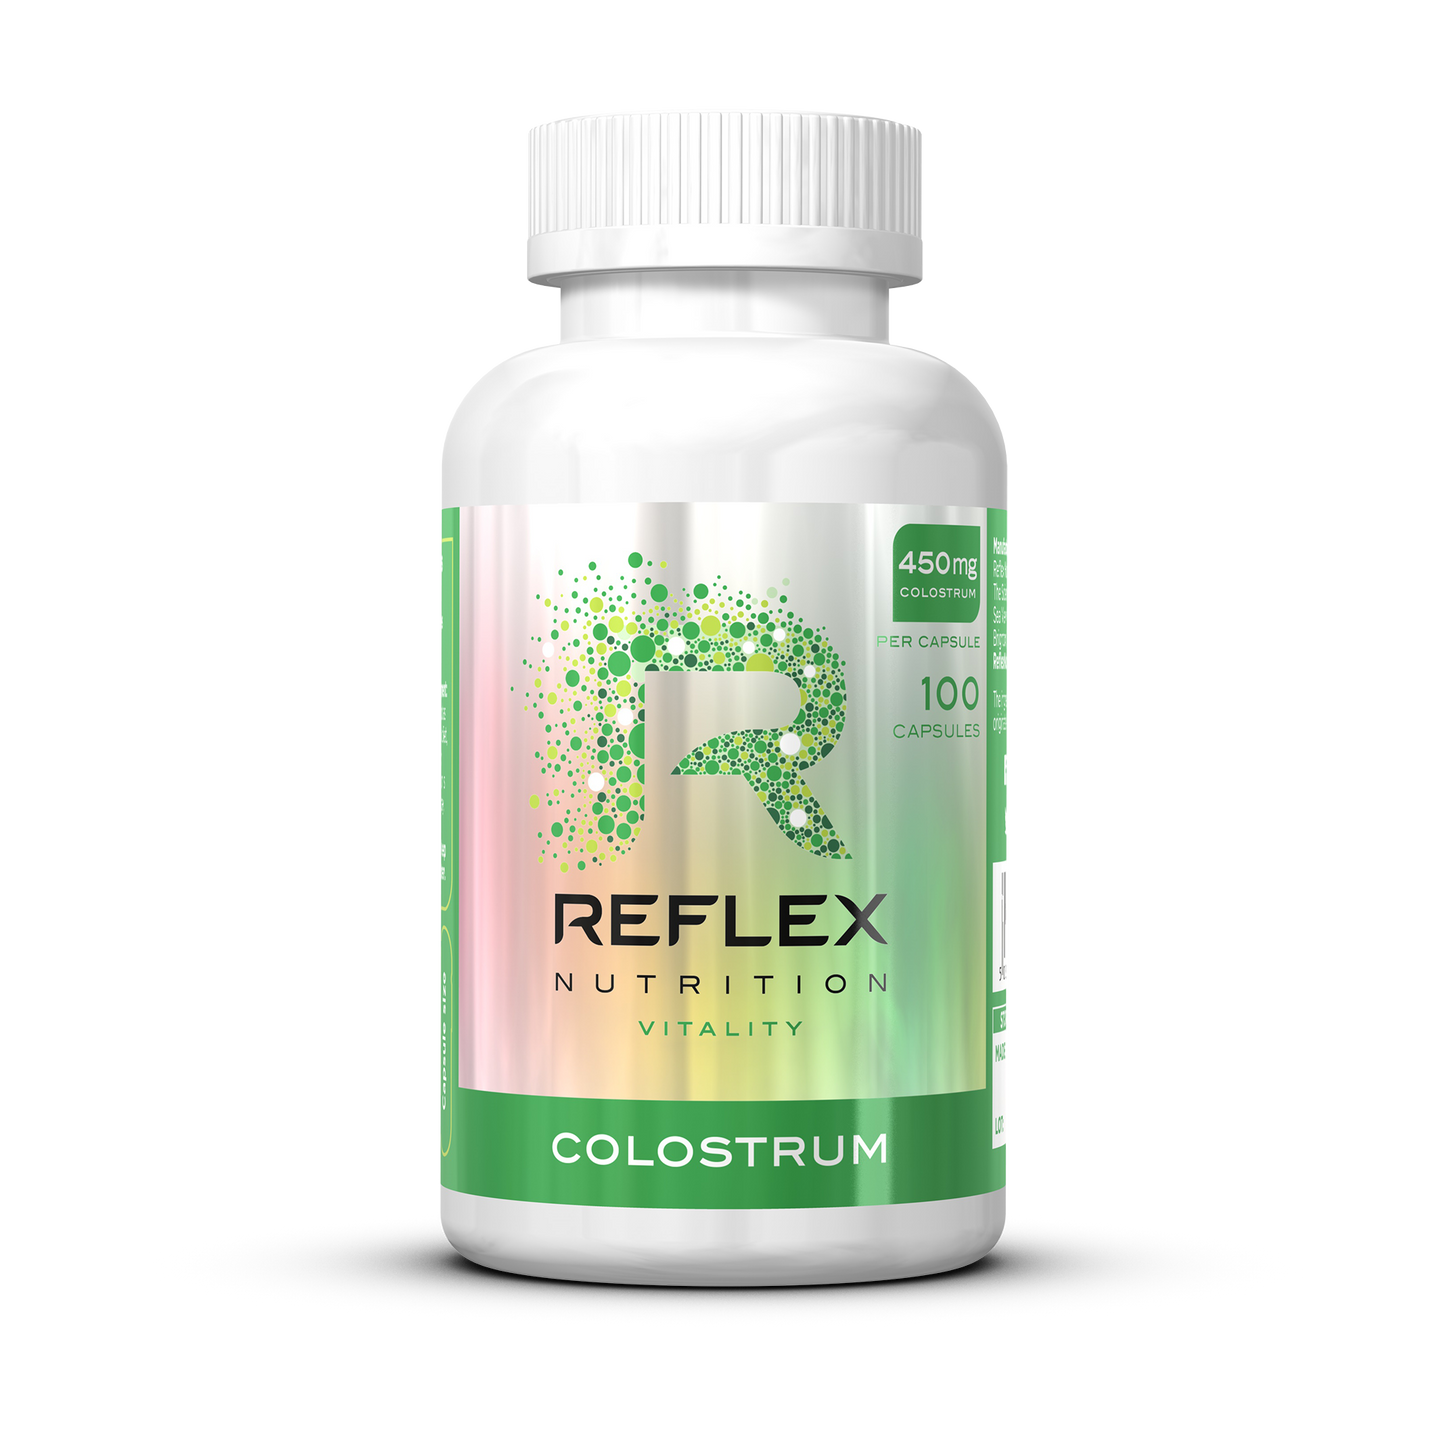 Reflex Nutrition Colostrum - 100 Capsules